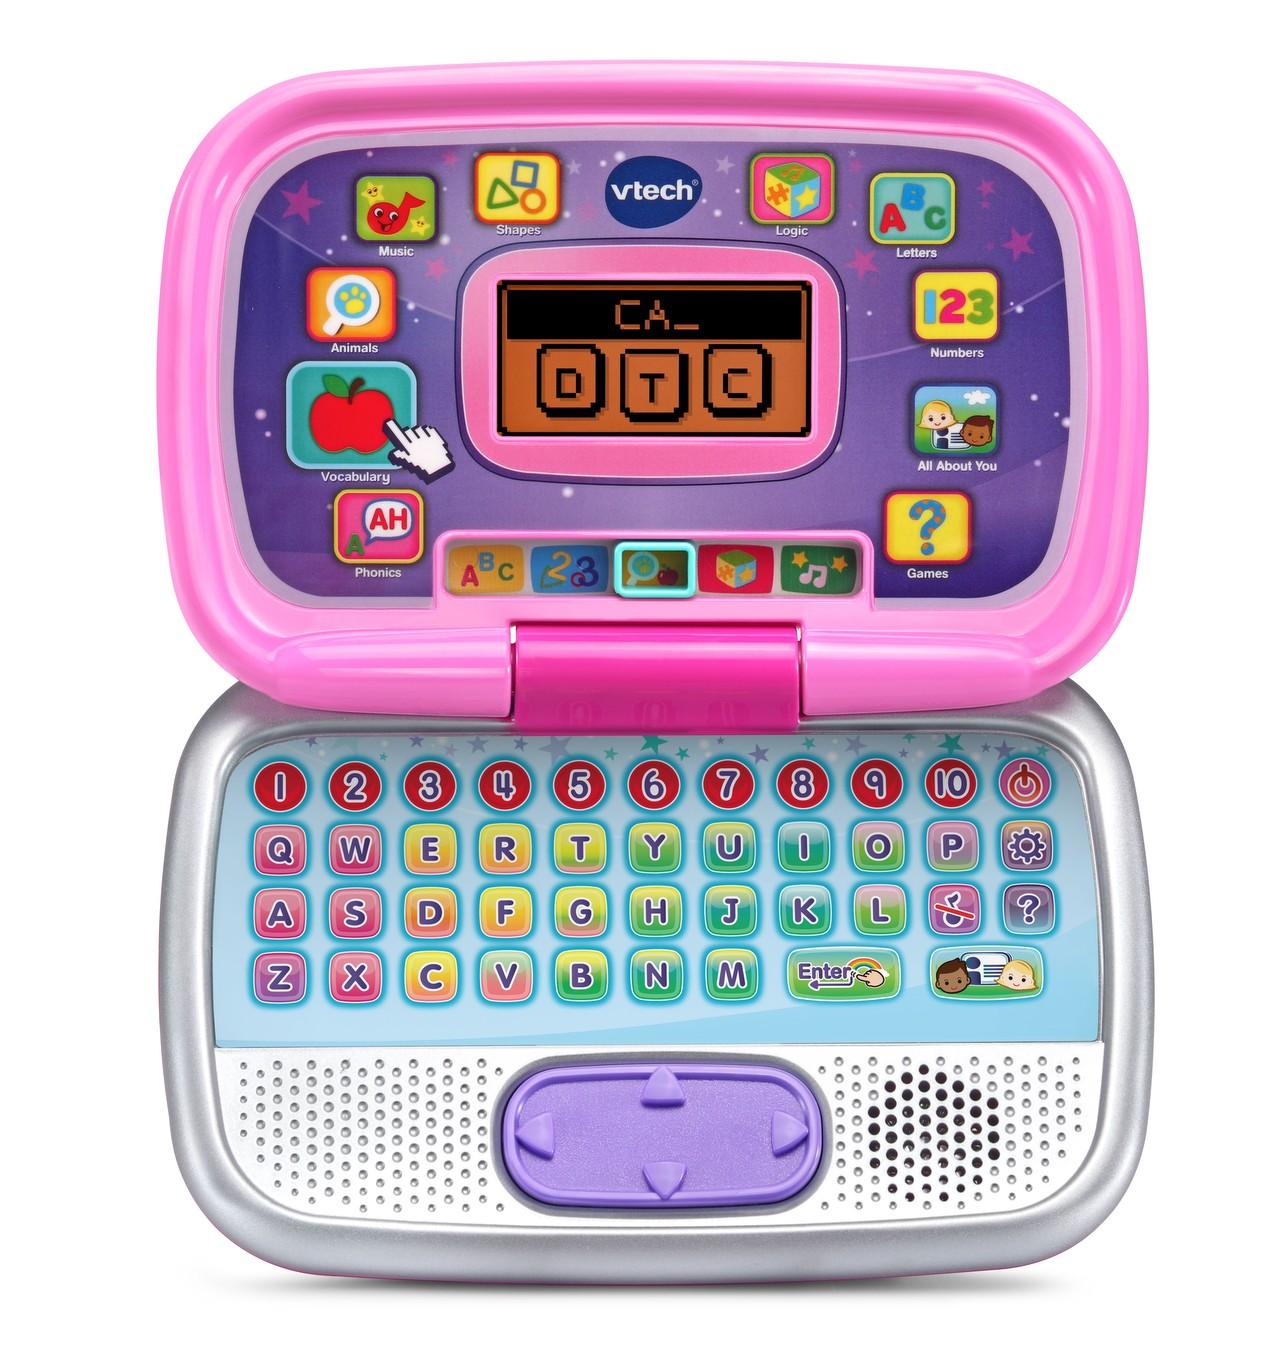 Vtech VTech Pre-School My Laptop - Pink 155453 - Toys from Toytown UK